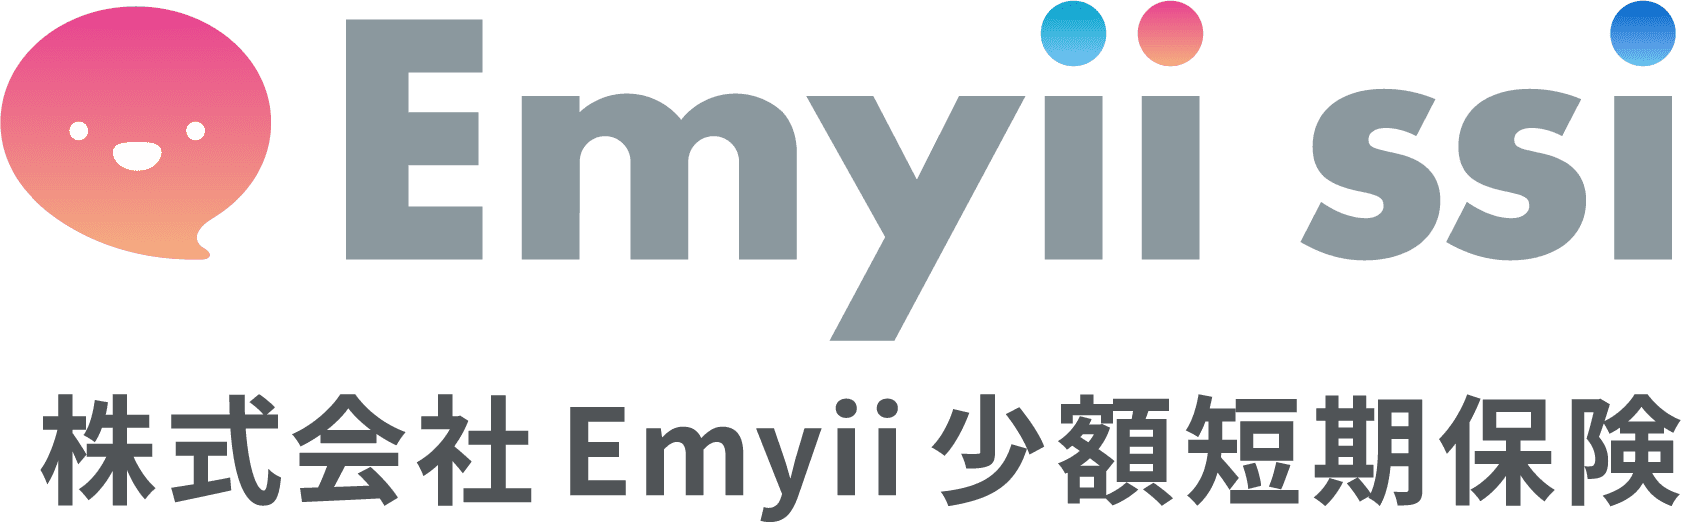 株式会社Emyii少額短期保険